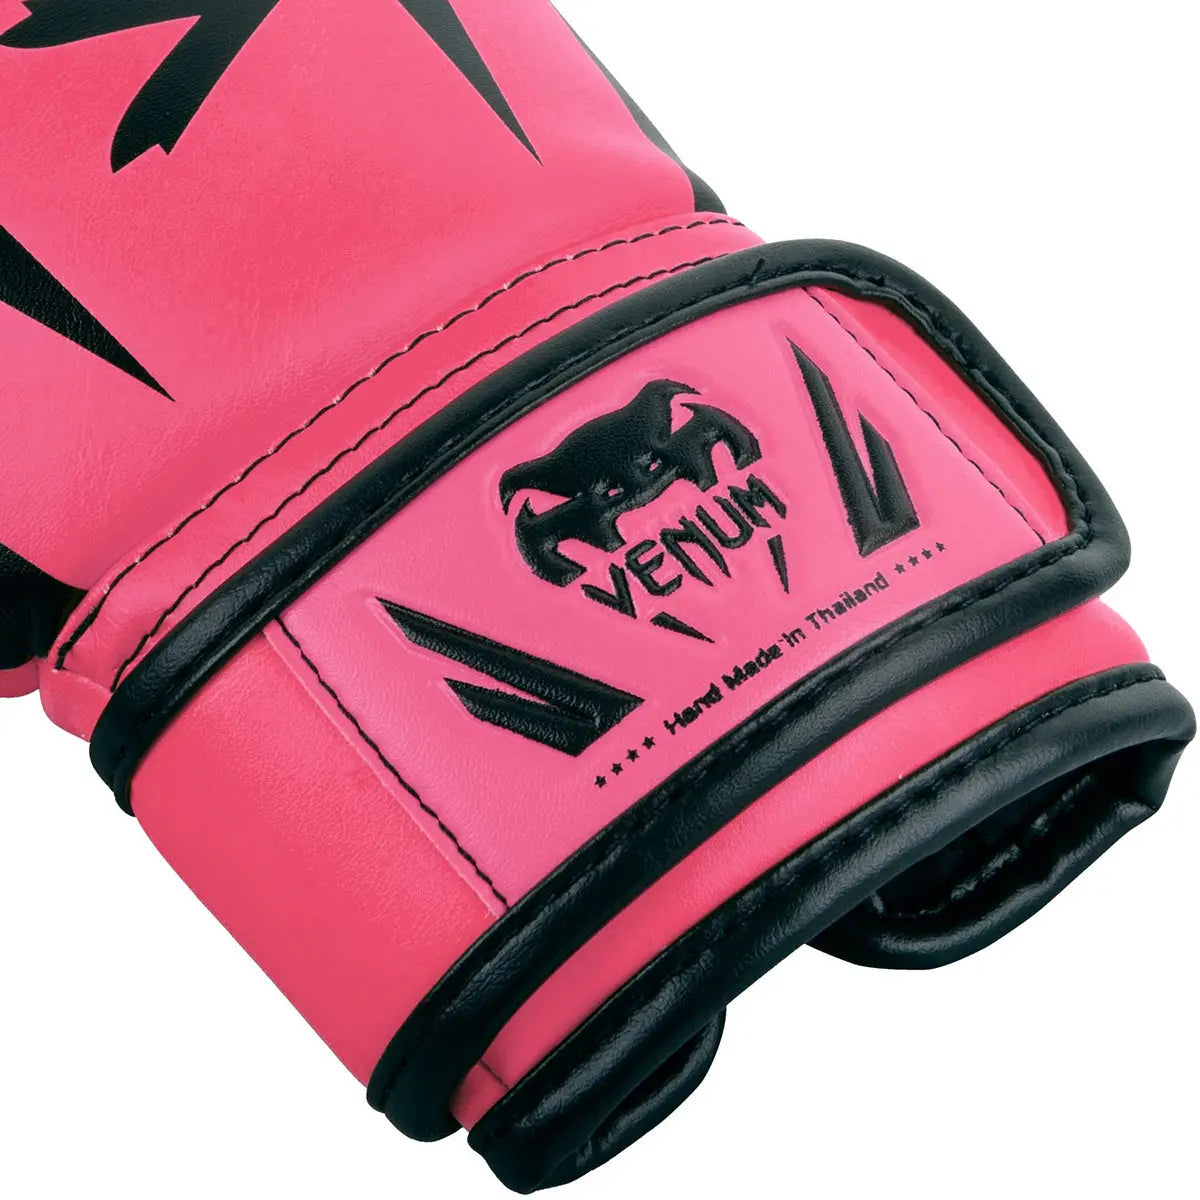 Venum Elite Kids Training Boxing Gloves Venum